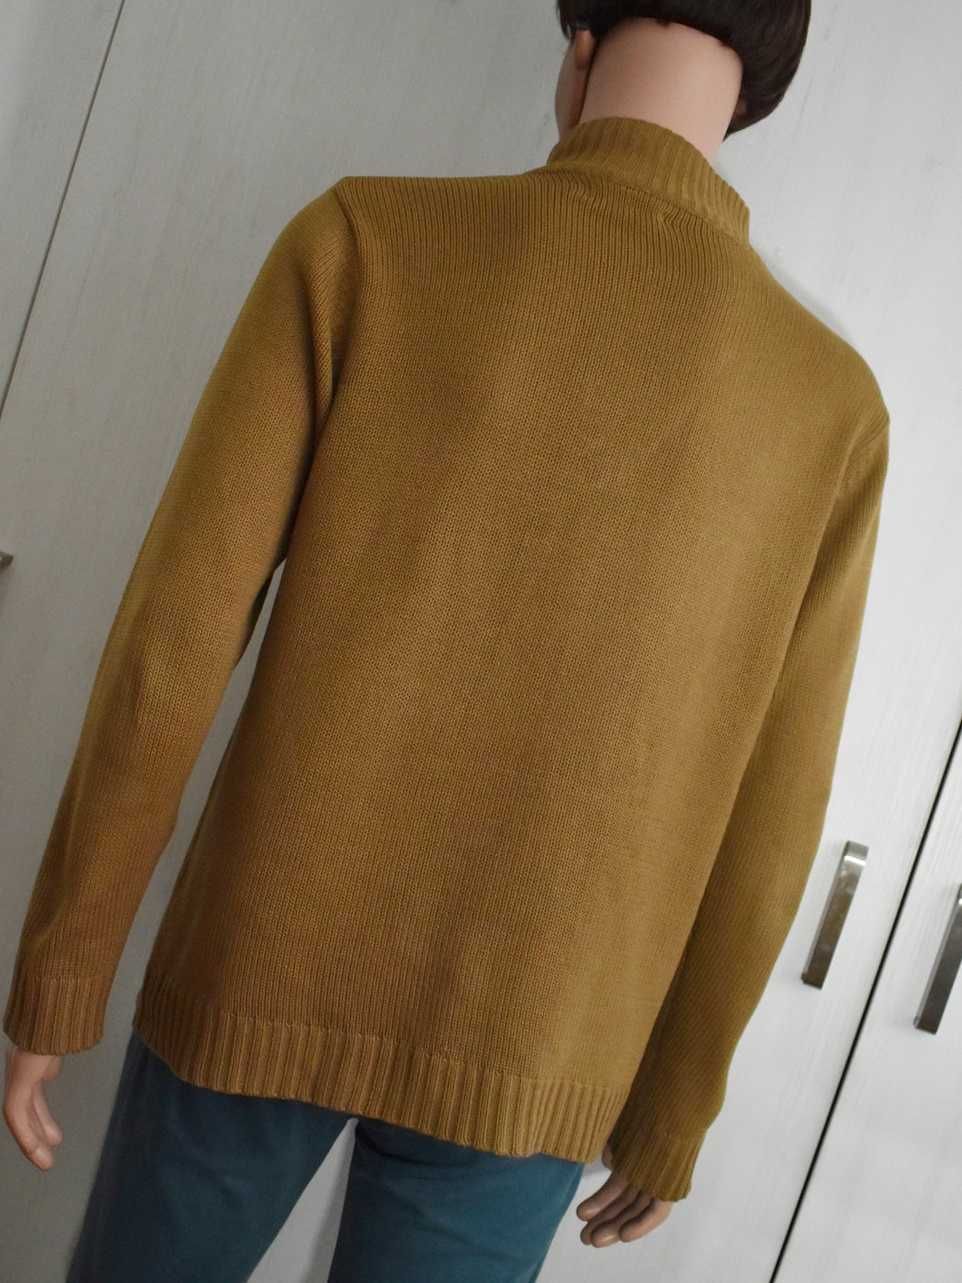 Sweter L kołnierzyk zasuwany Pierre Cardin prosty męski sweterek